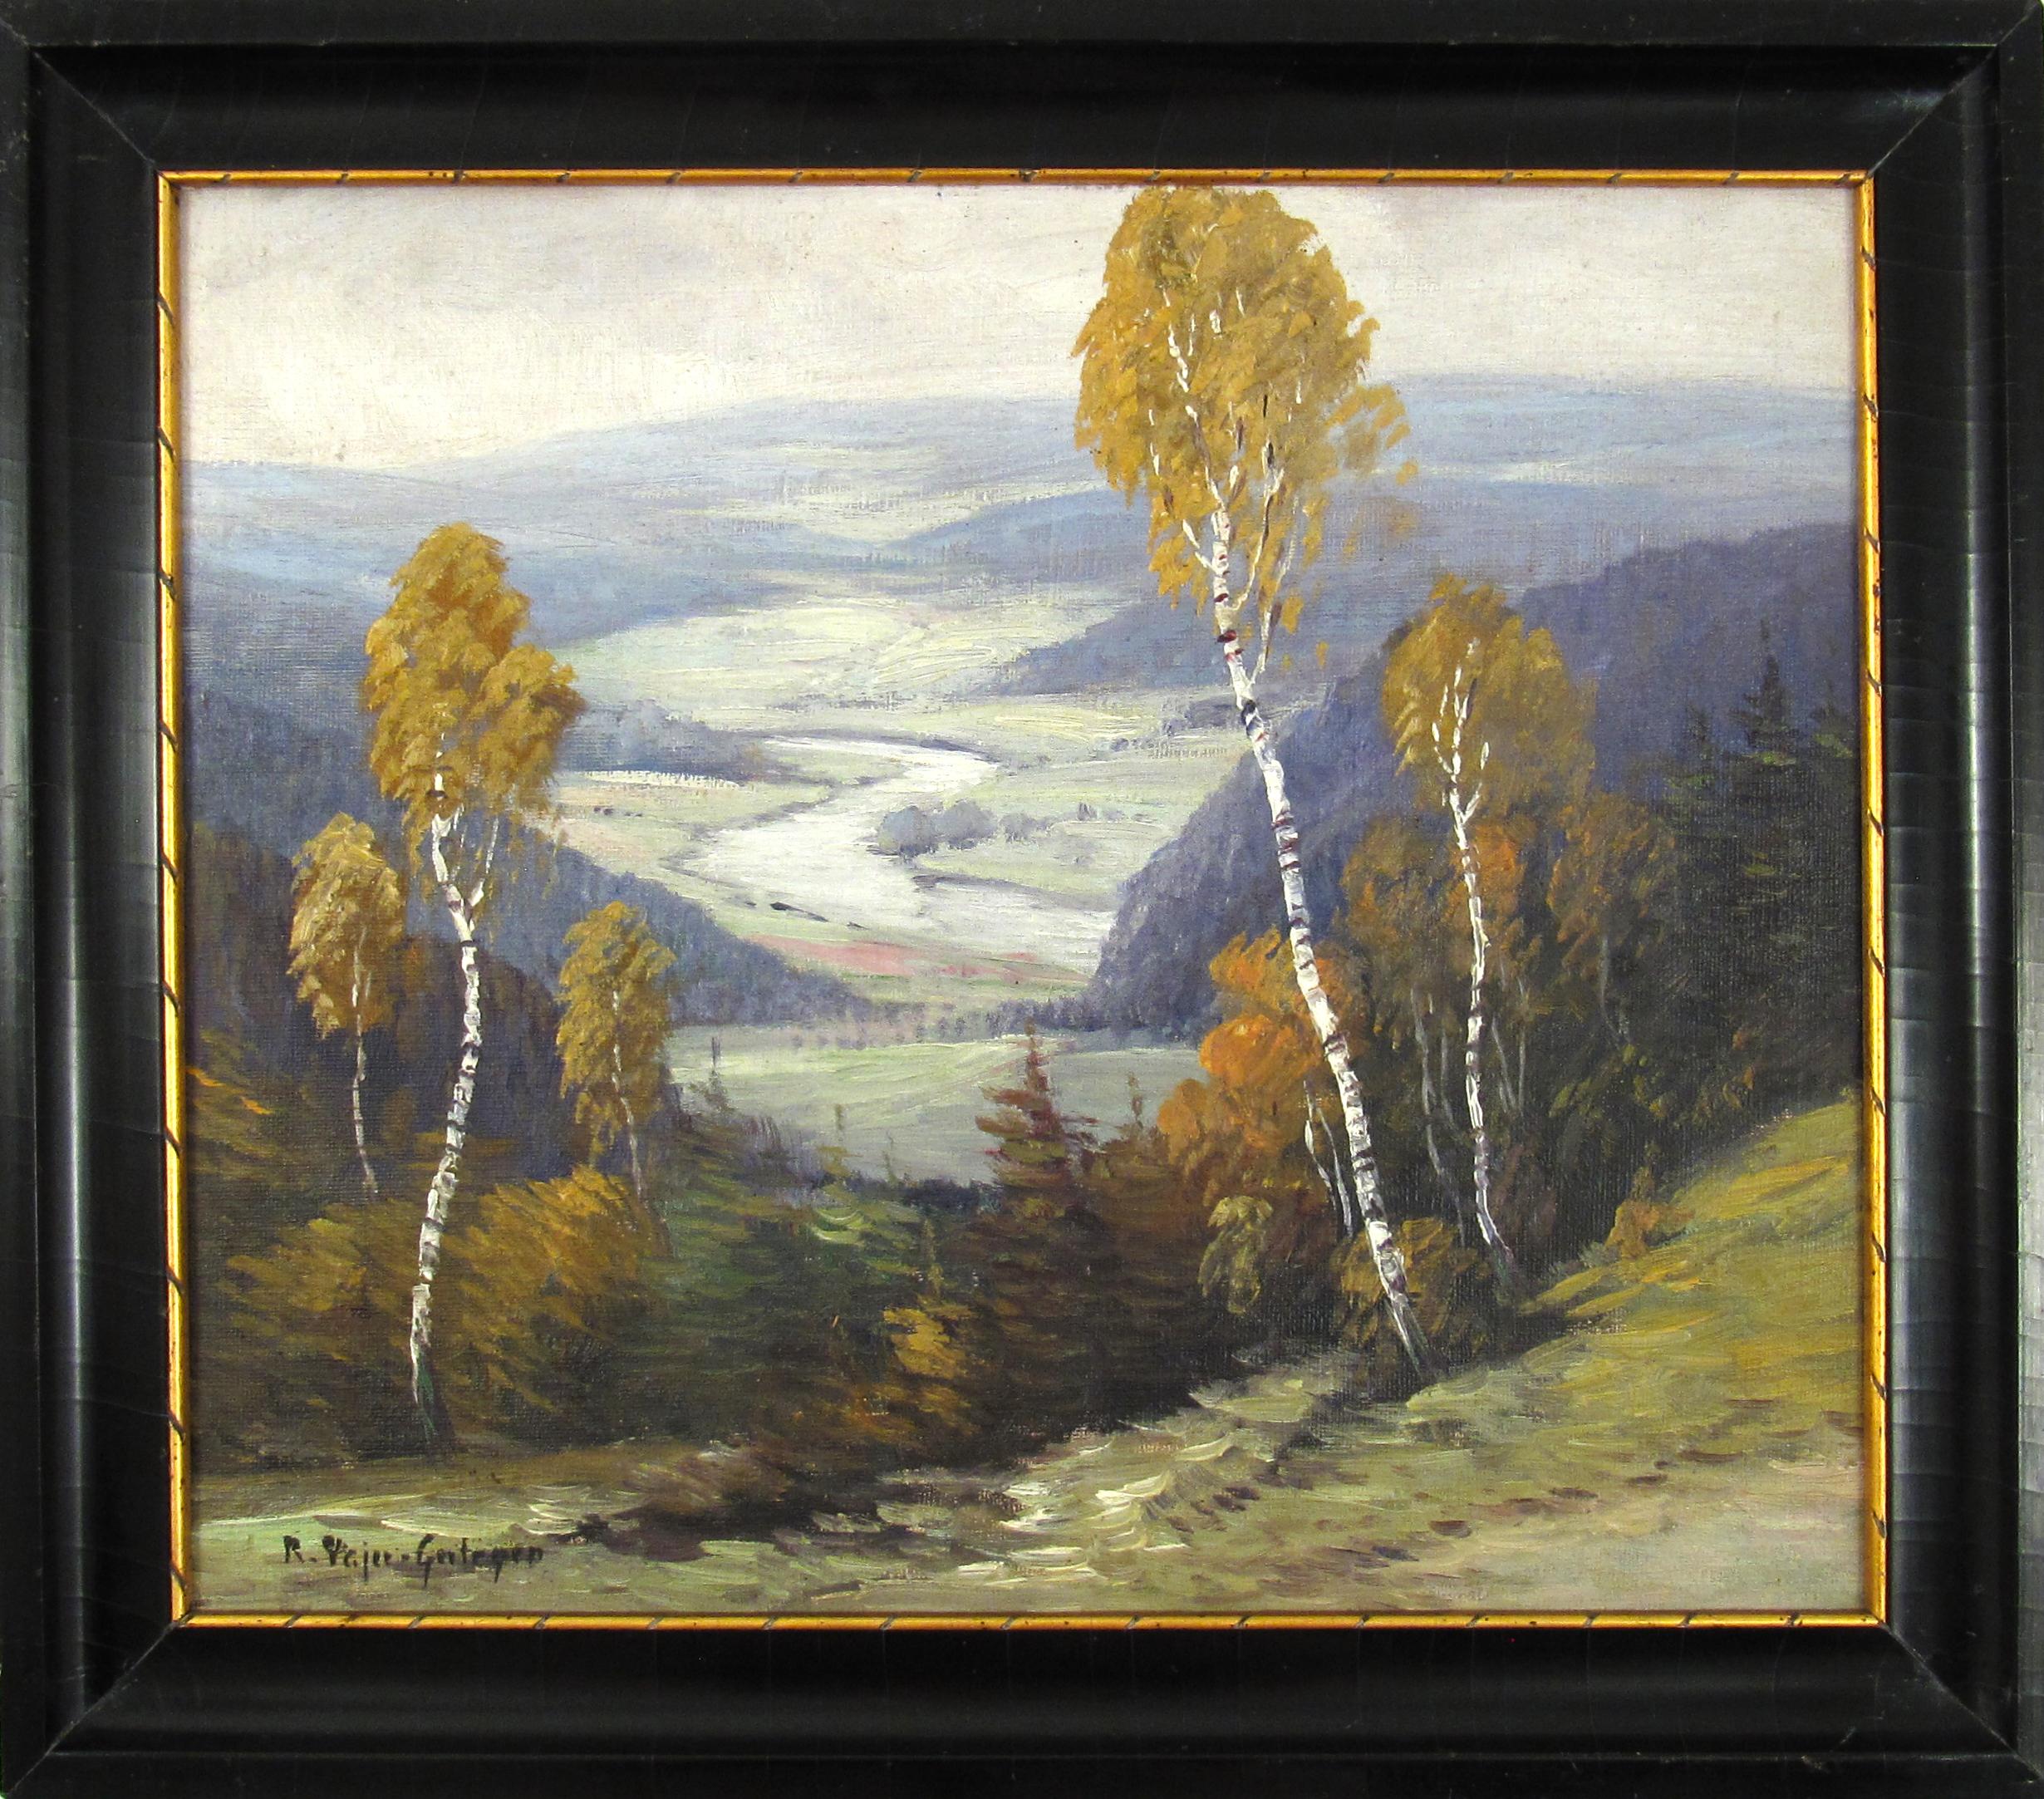 Robert Pajer - Gartegen (1886-1944) Donau River Landscape Painting Austria 1924